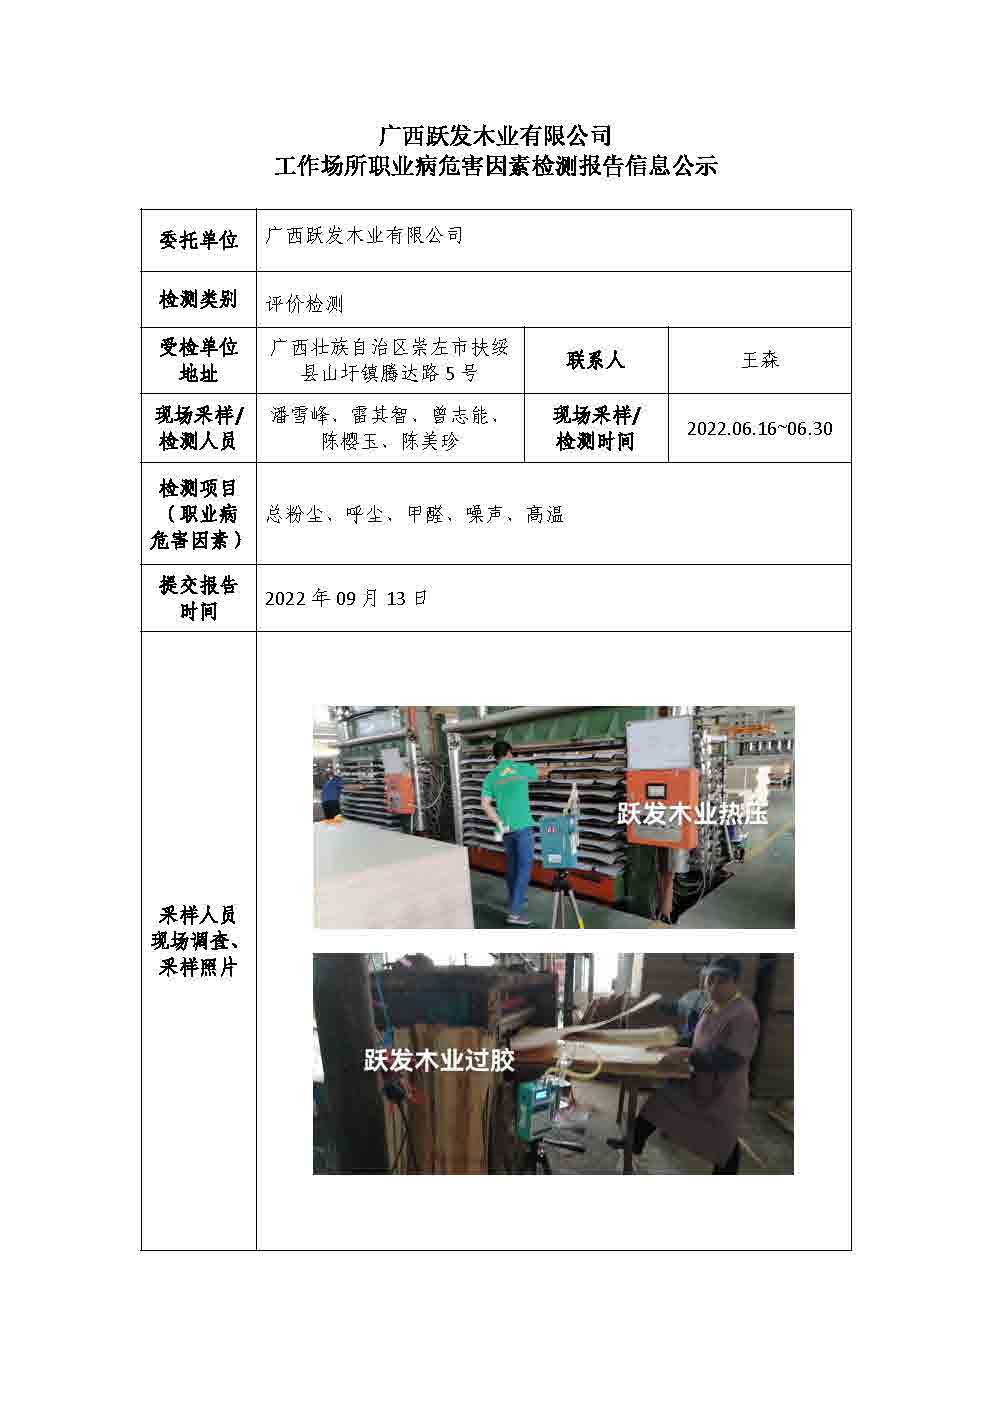 广西跃发木业有限公司工作场所职业病危害因素检测报告信息公示